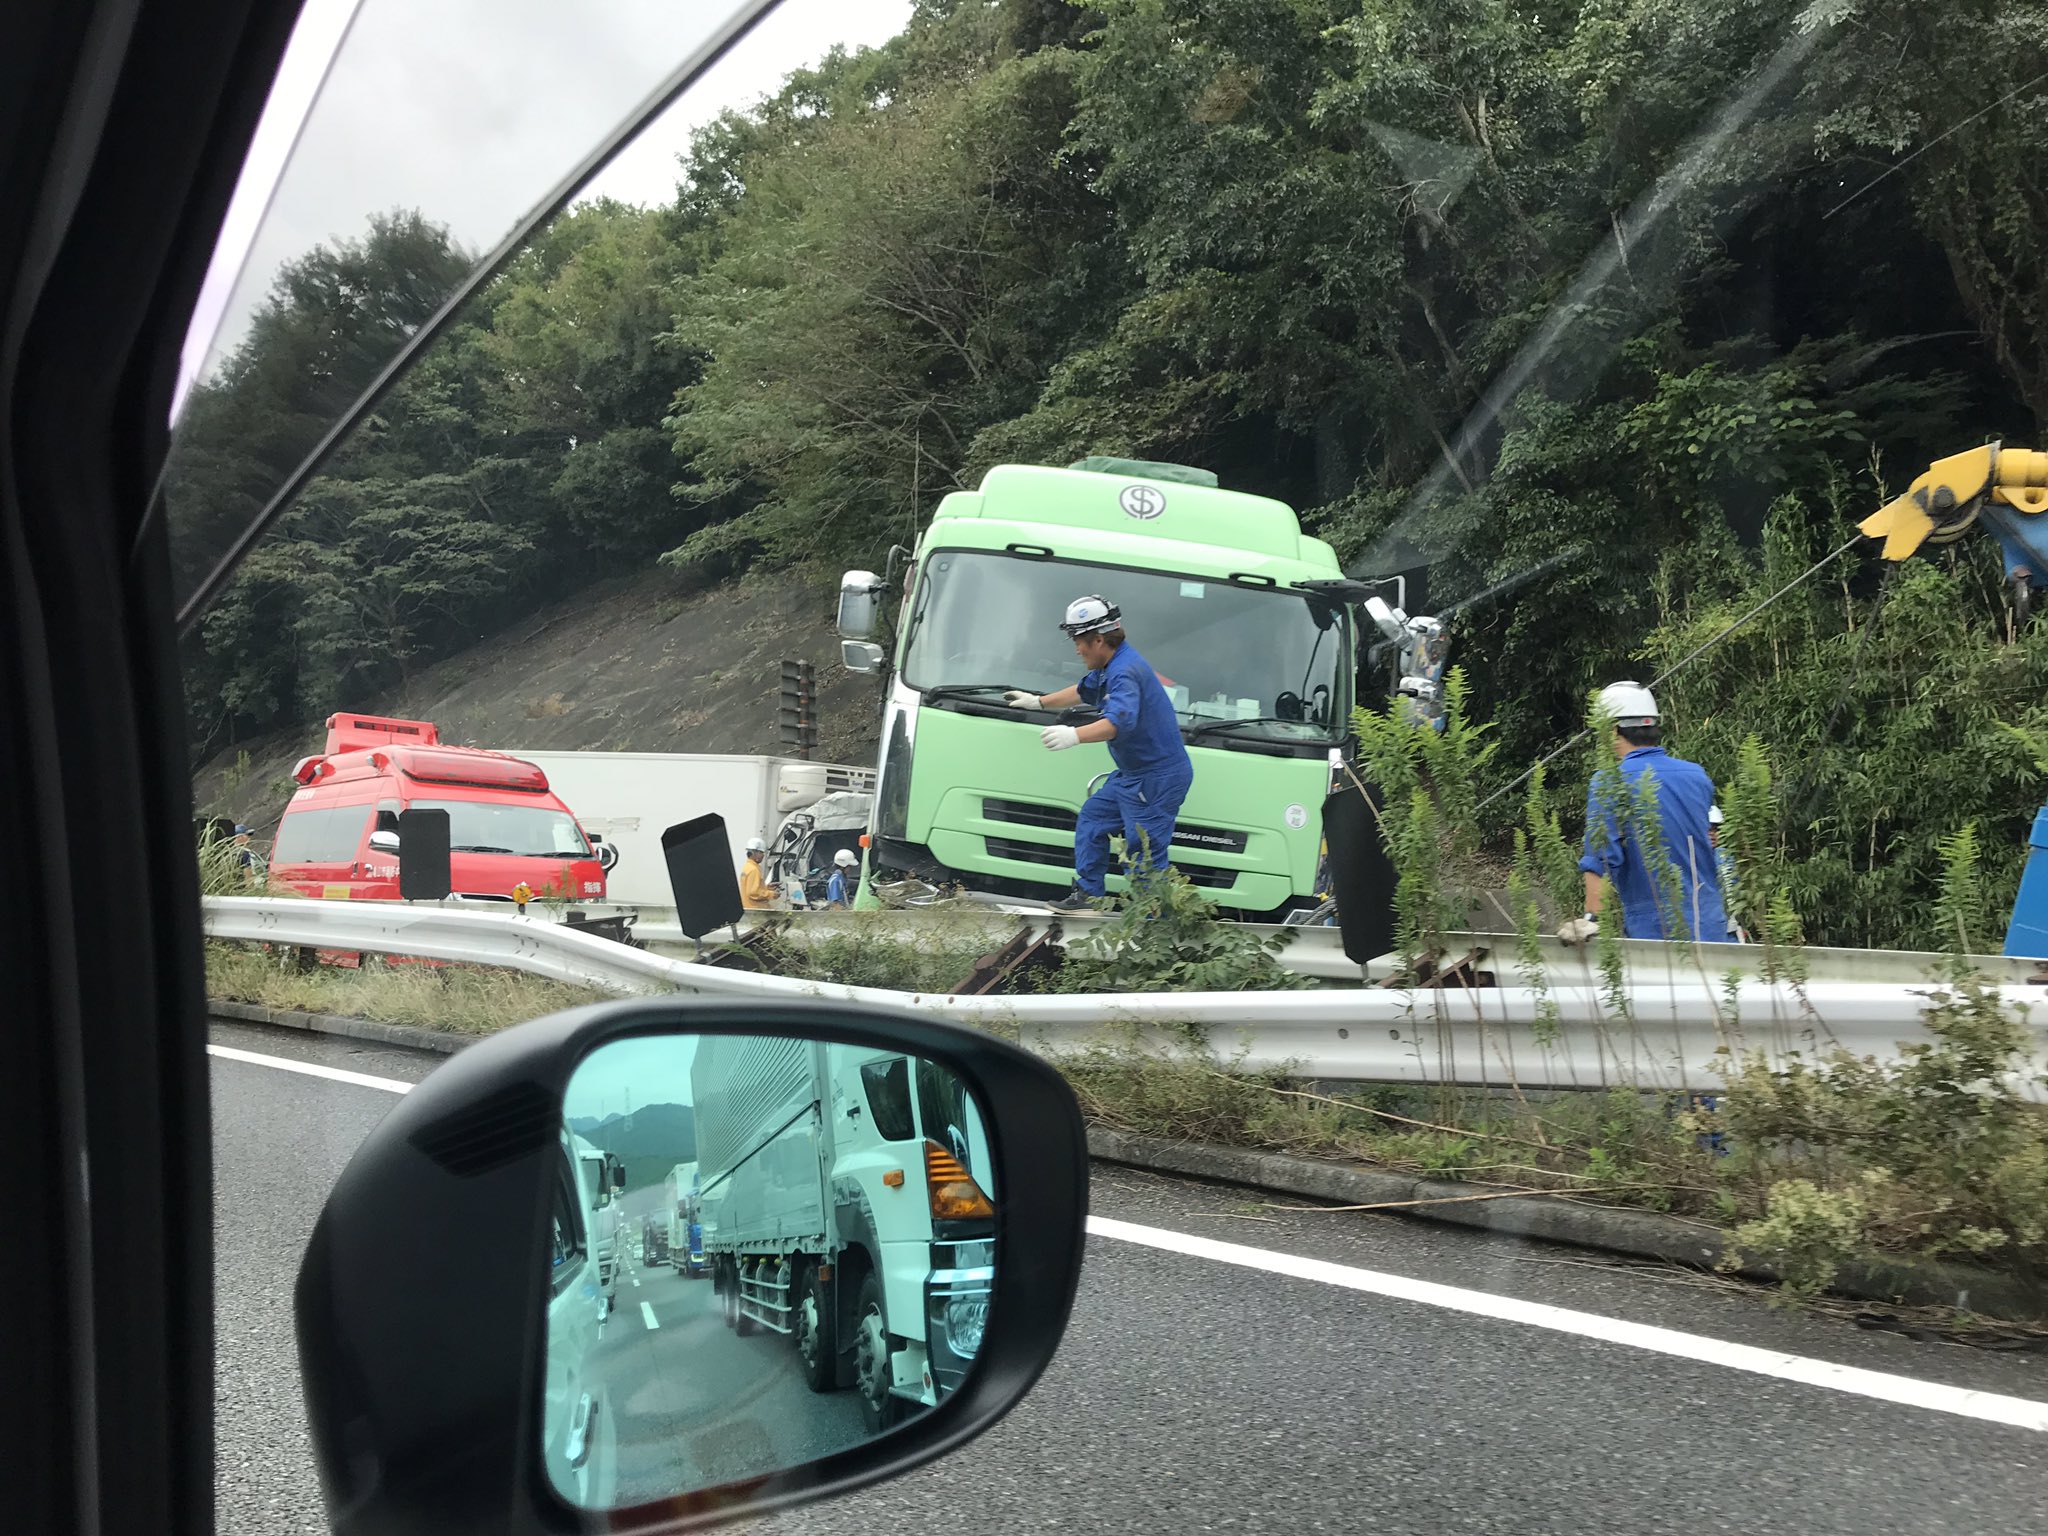 名阪国道の板屋ICでトレーラーとトラック衝突した事故現場の画像